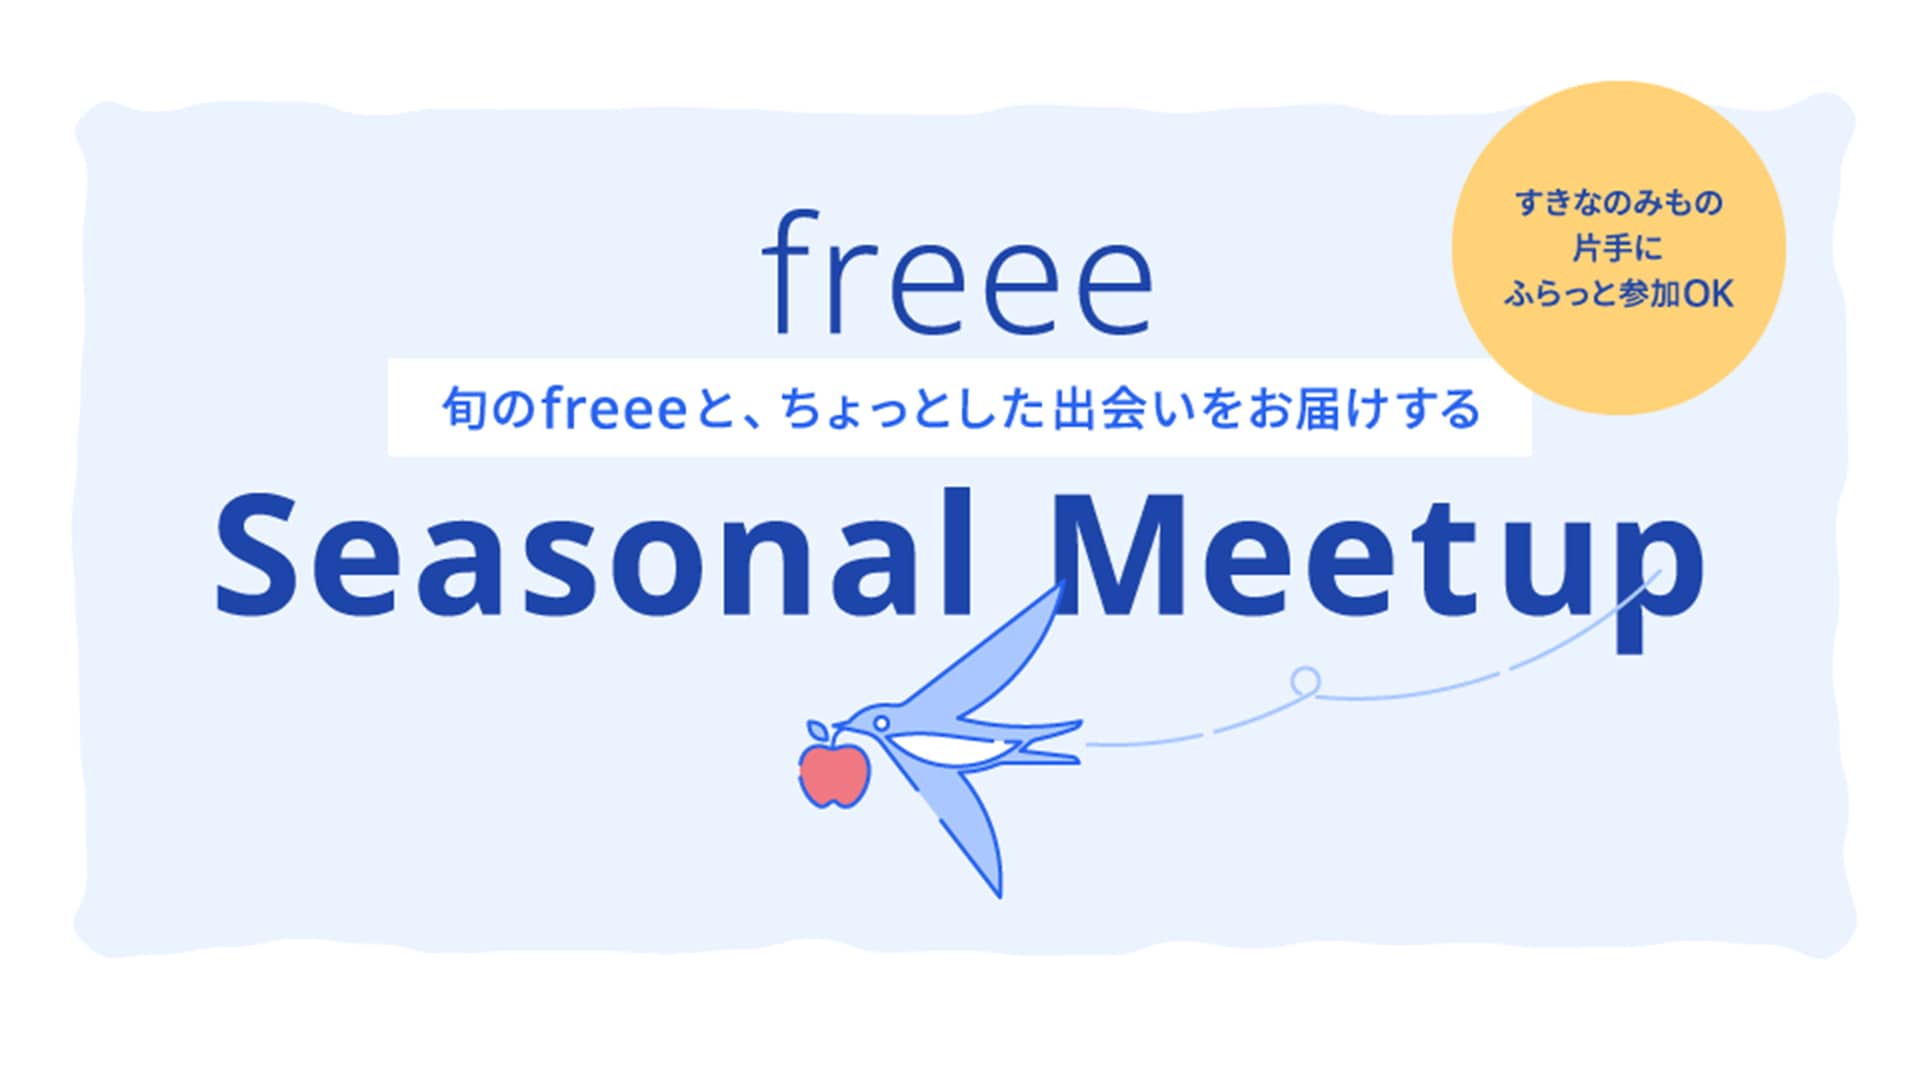 freee_seasonal_meetup12_image01.png